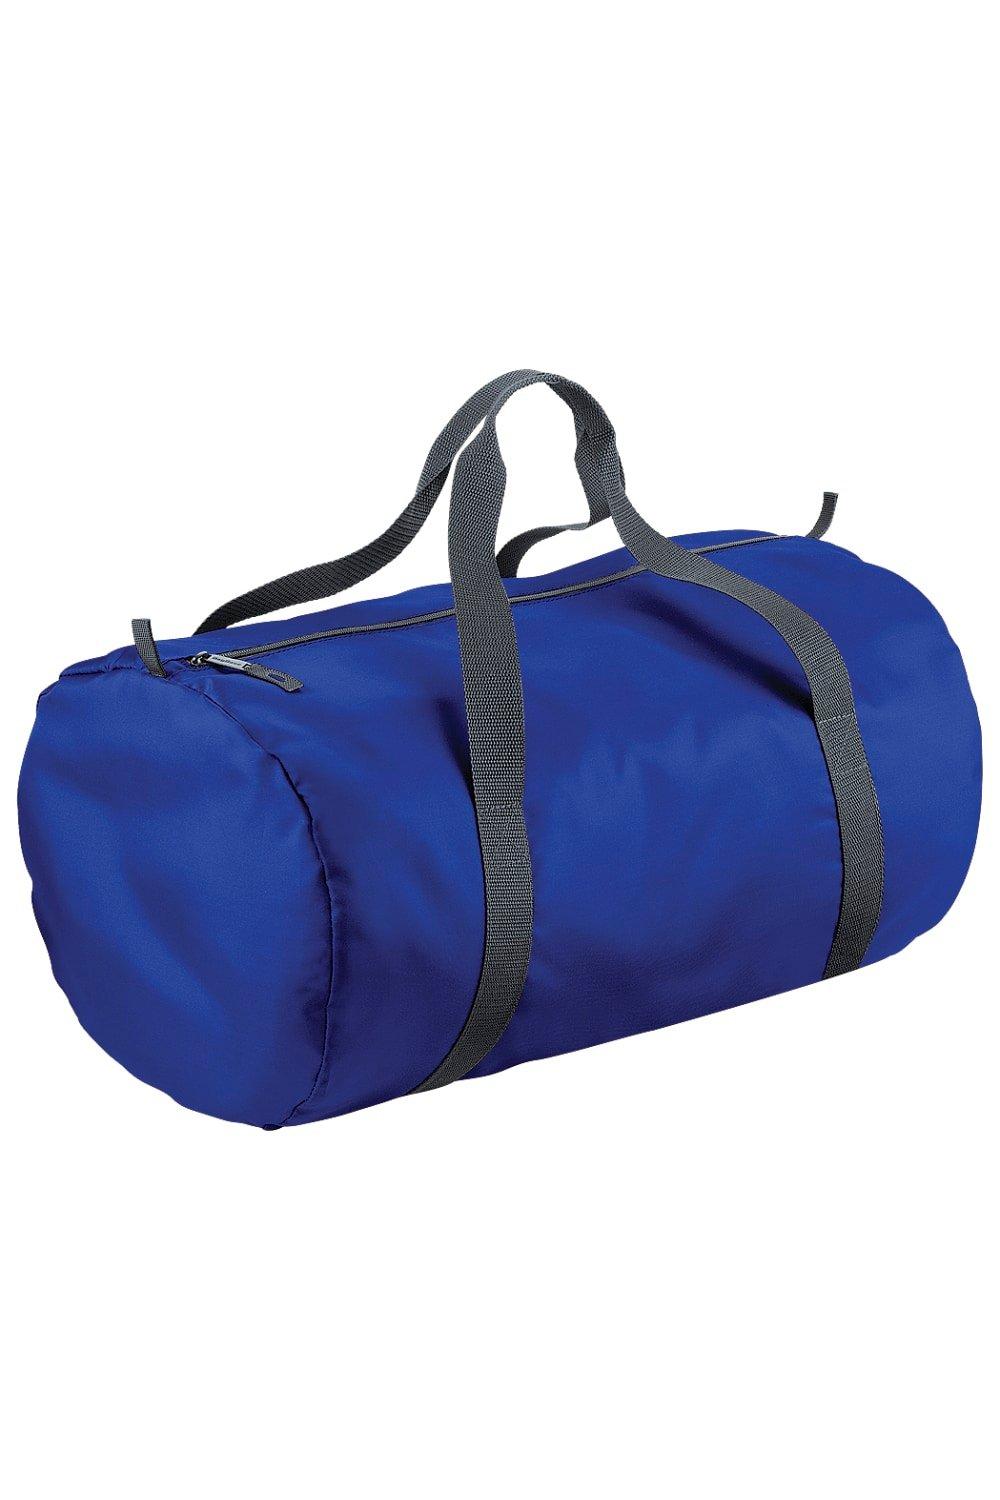 Водонепроницаемая дорожная сумка Packaway Barrel Bag / Duffle (32 литра) Bagbase, синий